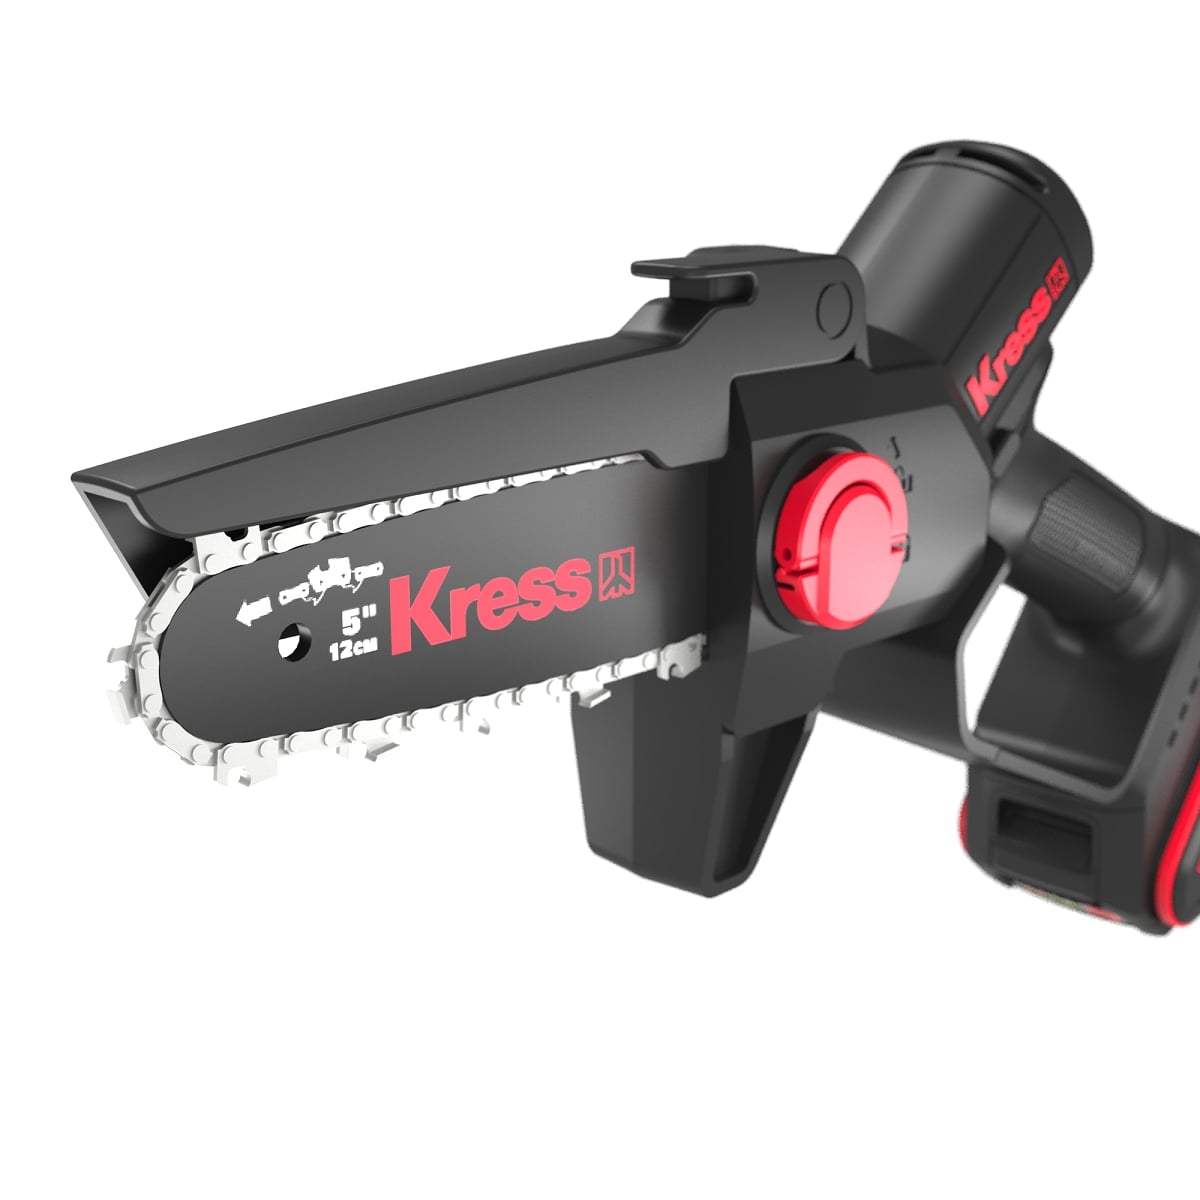 Kress KG343E.9 20V 12cm Cordless Brushless One-hand Chainsaw - Tool Only